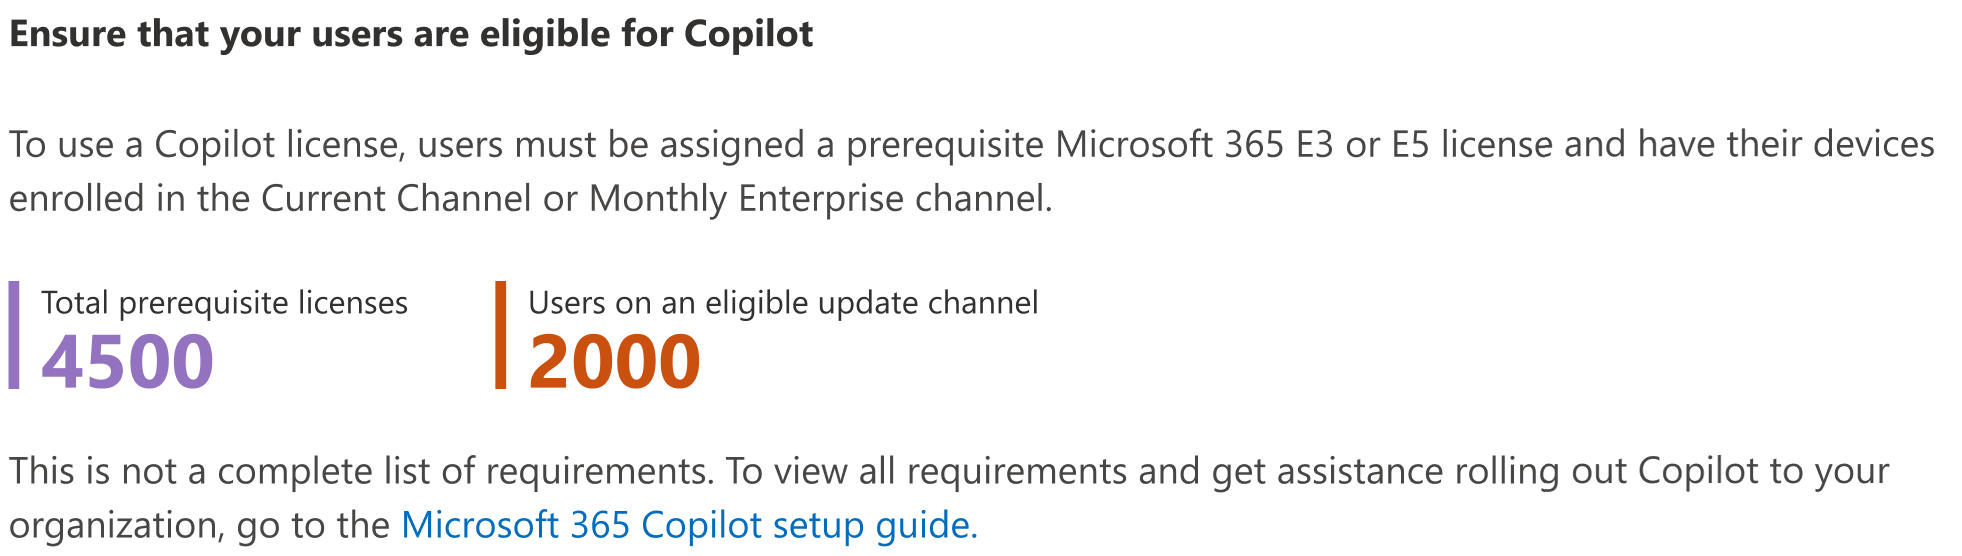 ユーザーがCopilot for Microsoft 365の対象であることを確認する方法を示すスクリーンショット。